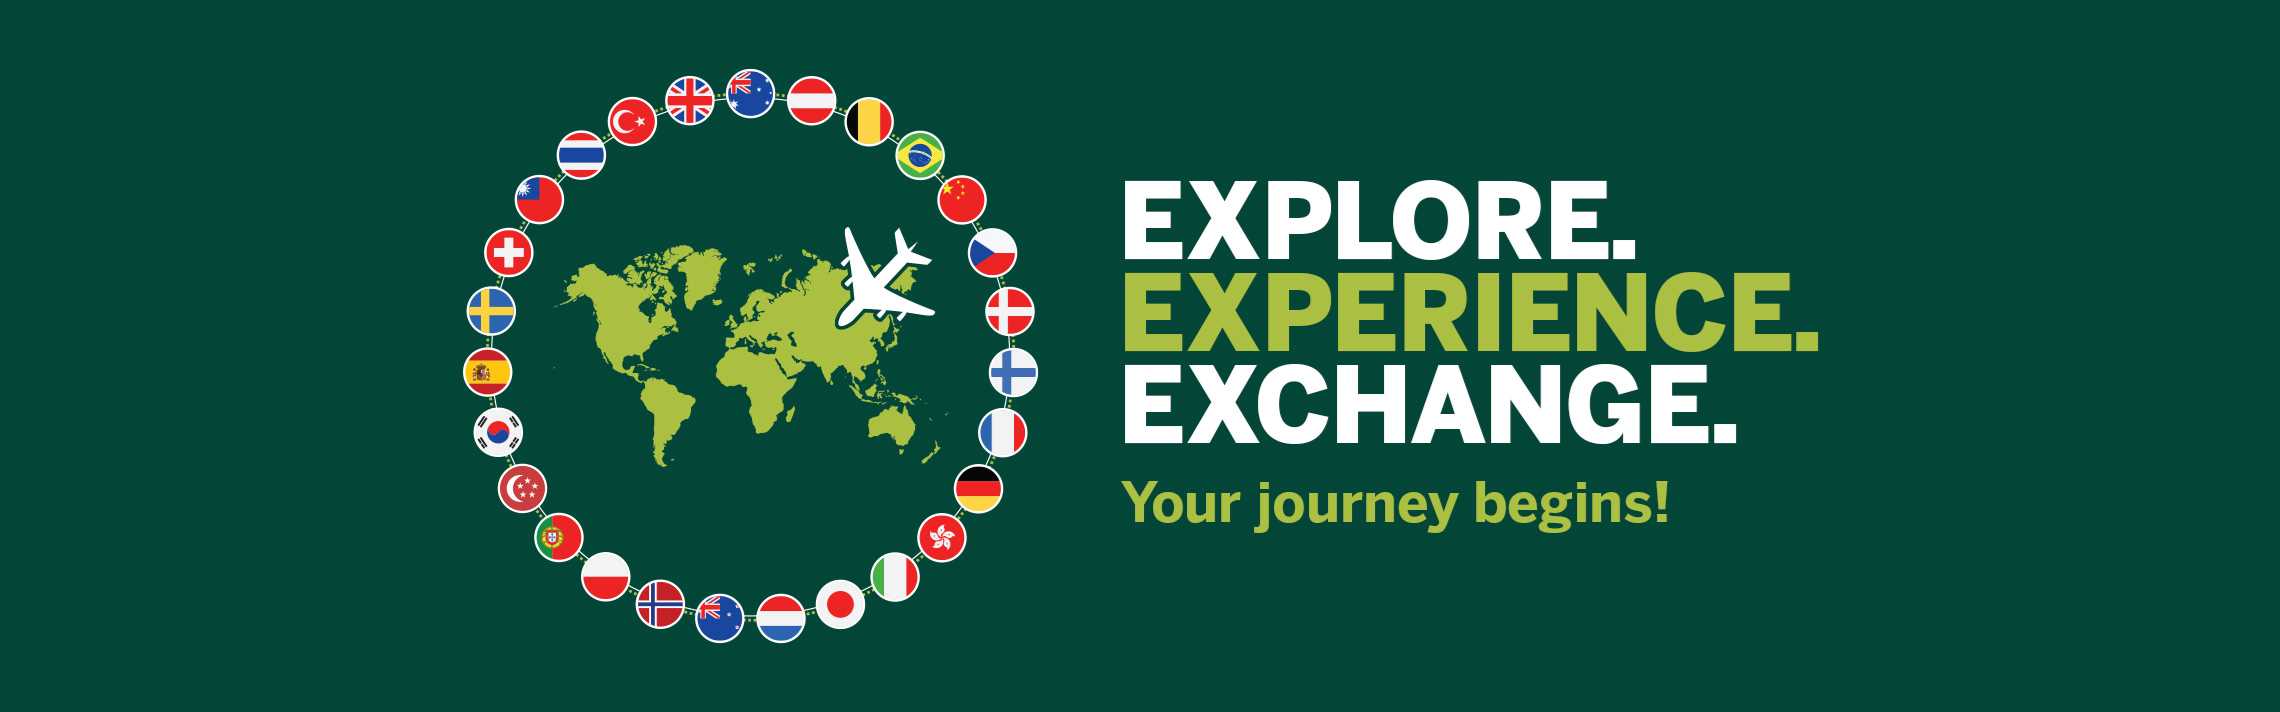 Explore. Experience. Exchange.